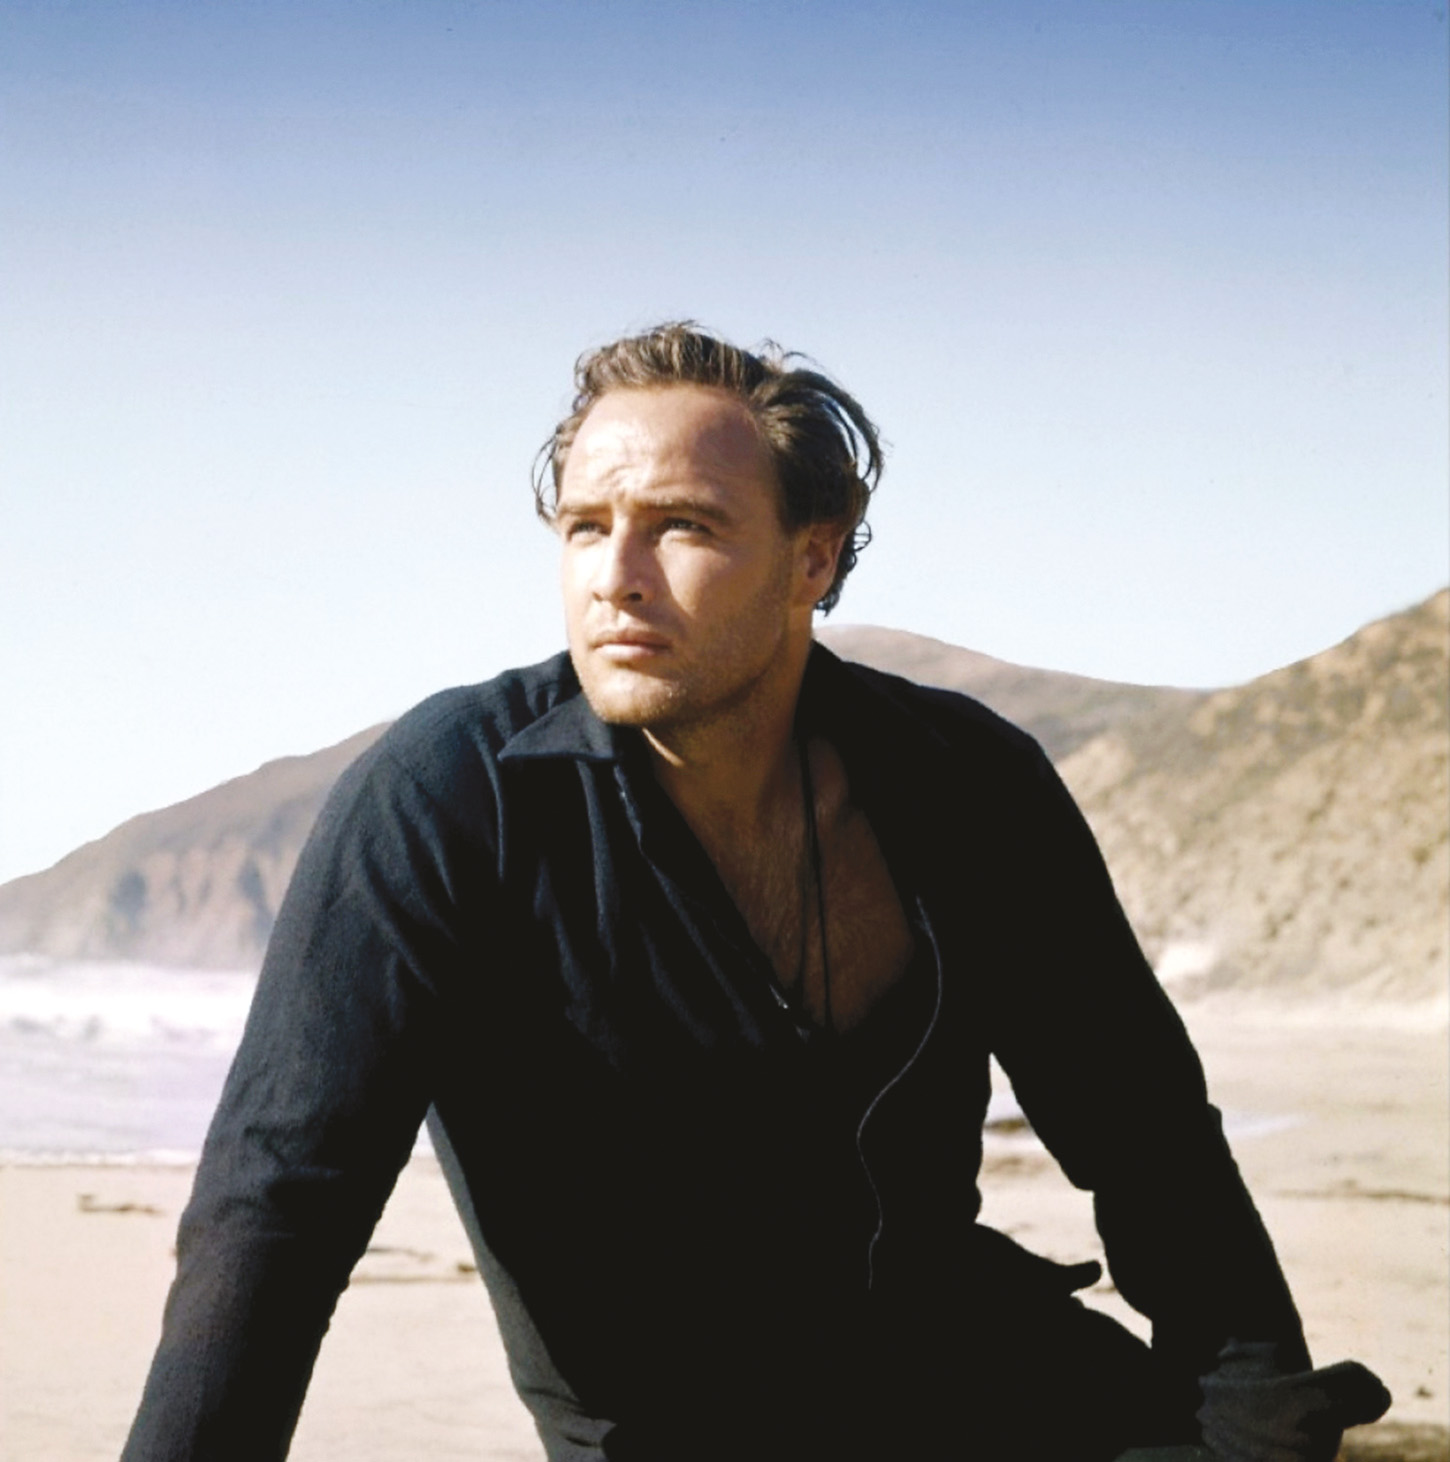 El rostro impenetrable, de Marlon Brando